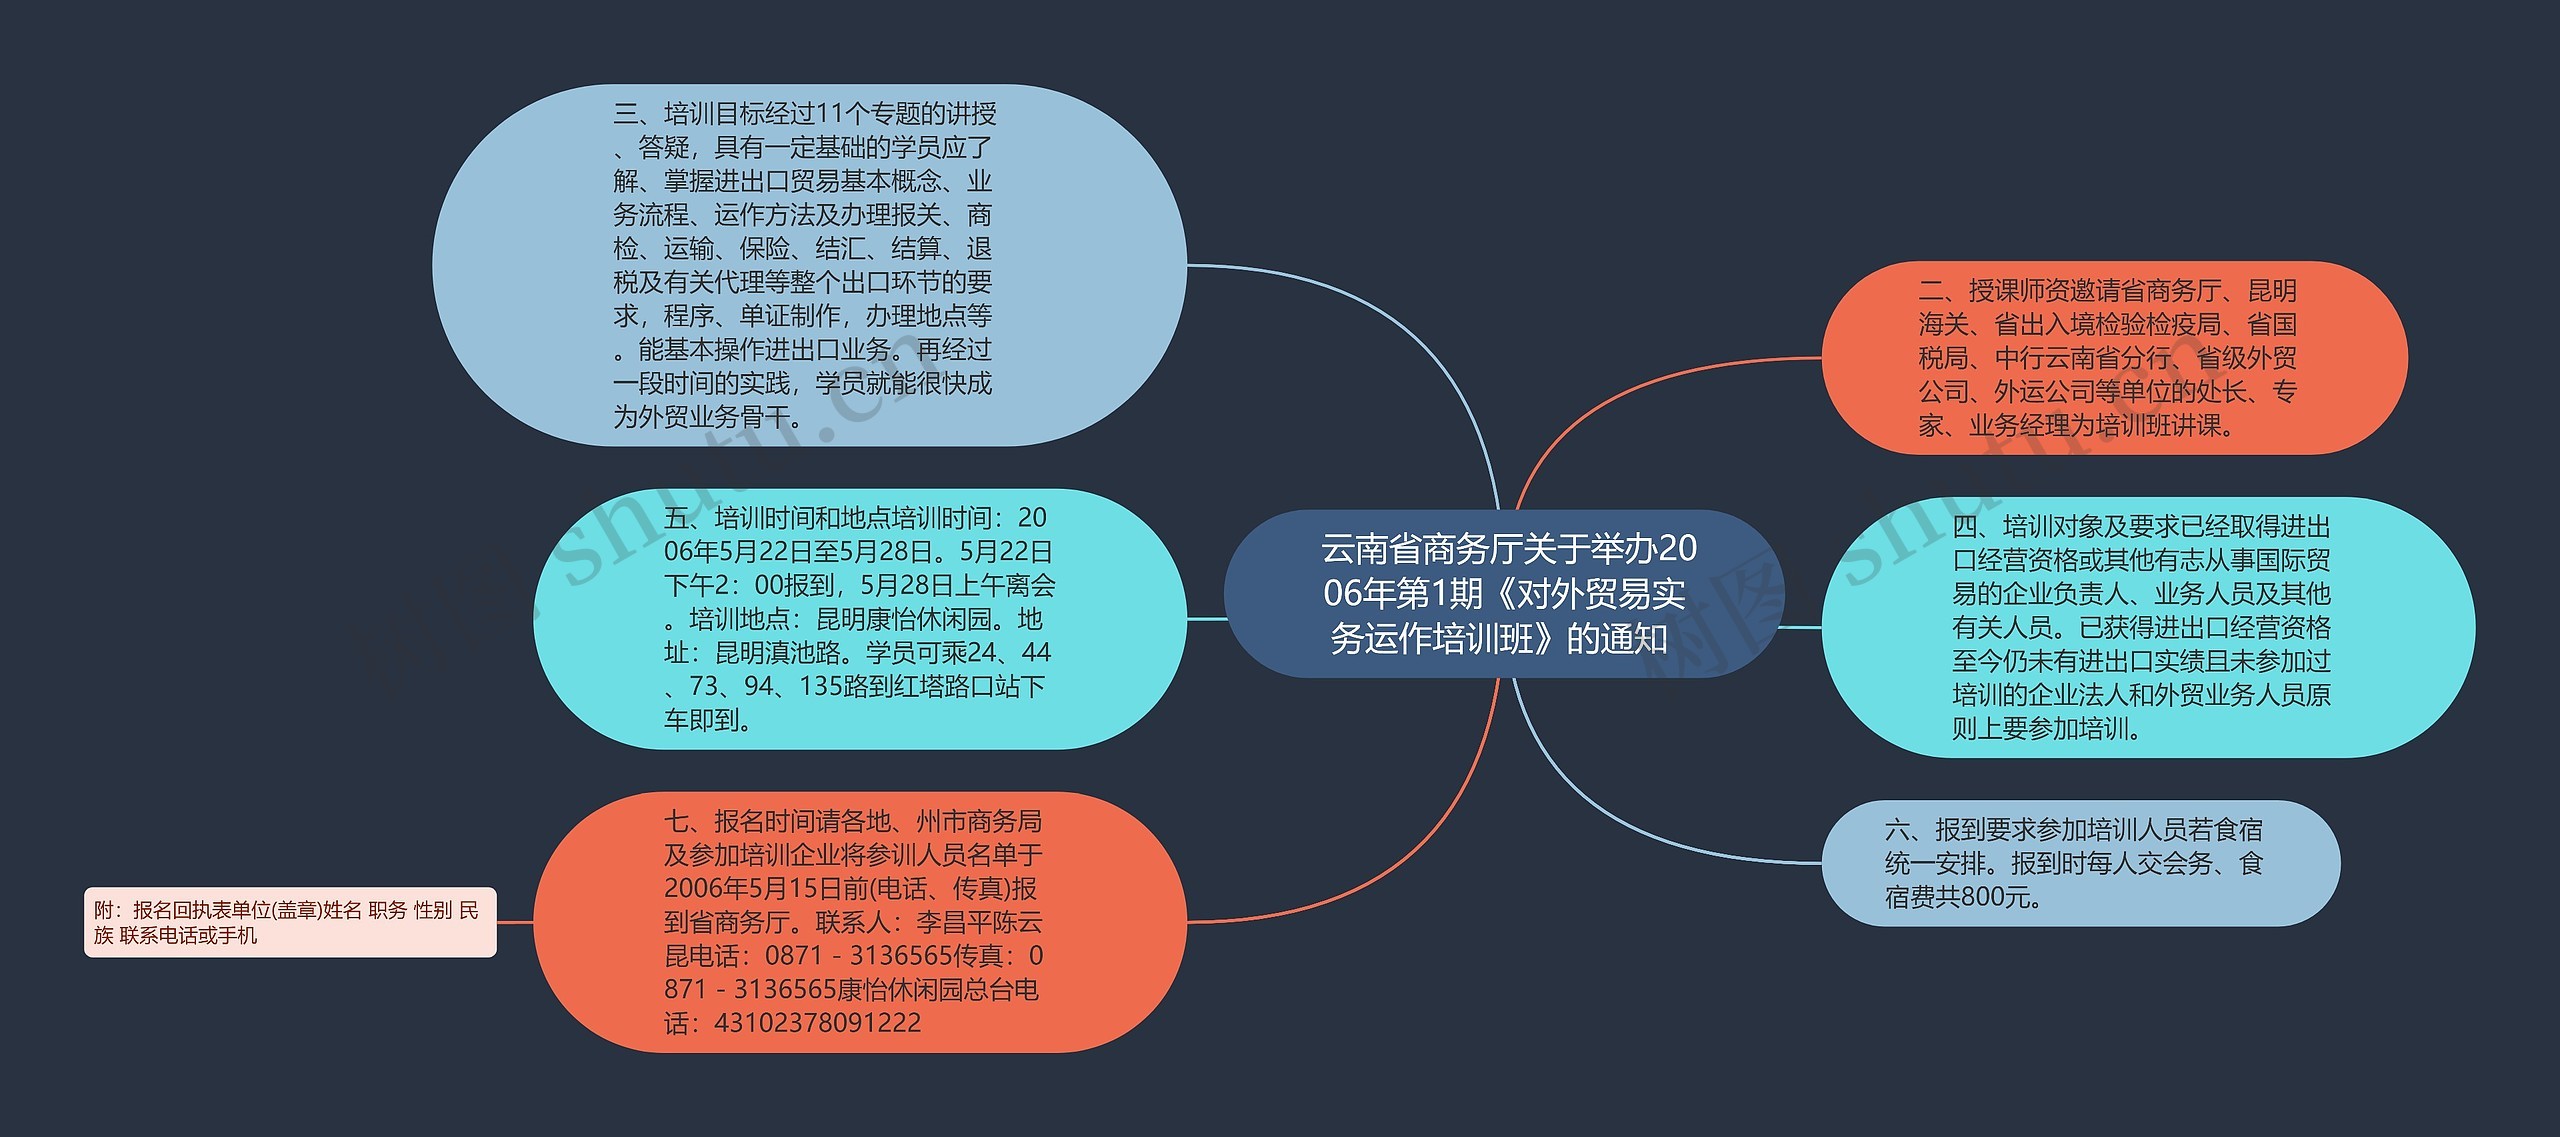  云南省商务厅关于举办2006年第1期《对外贸易实务运作培训班》的通知 思维导图